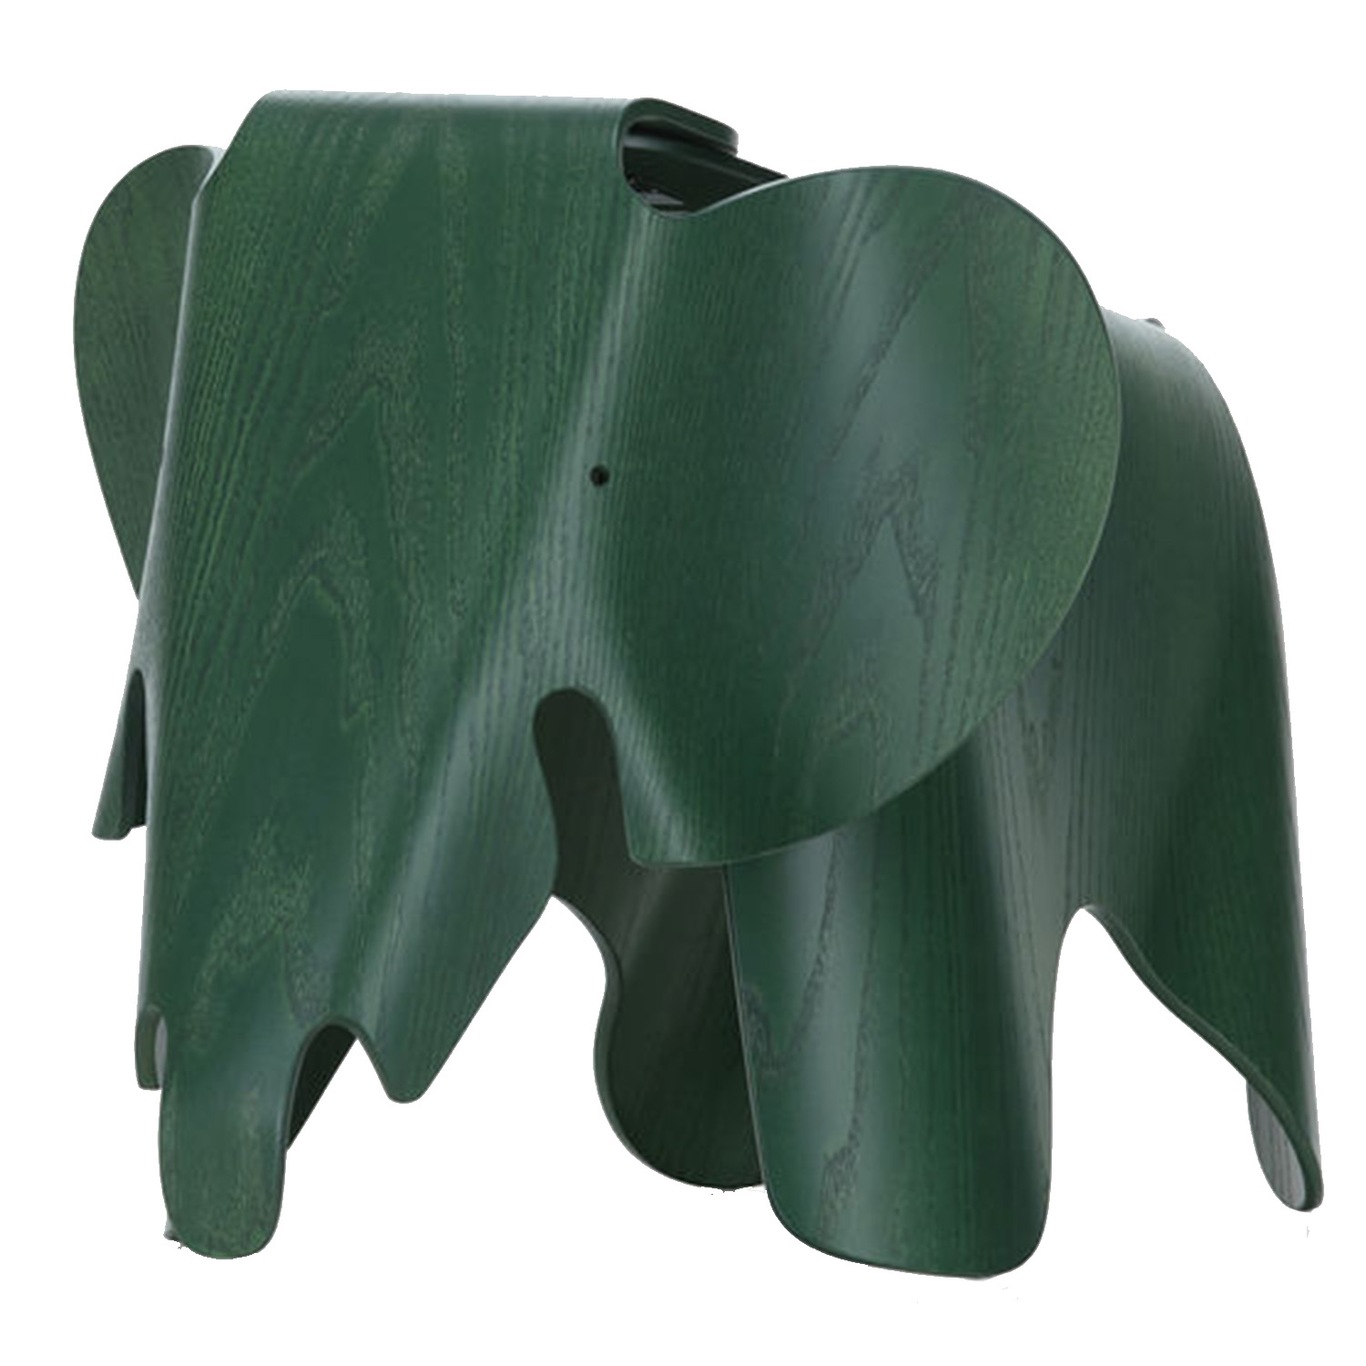 Eames Elefant Krydsfiner, Eames Special Collection, Mørkegrøn